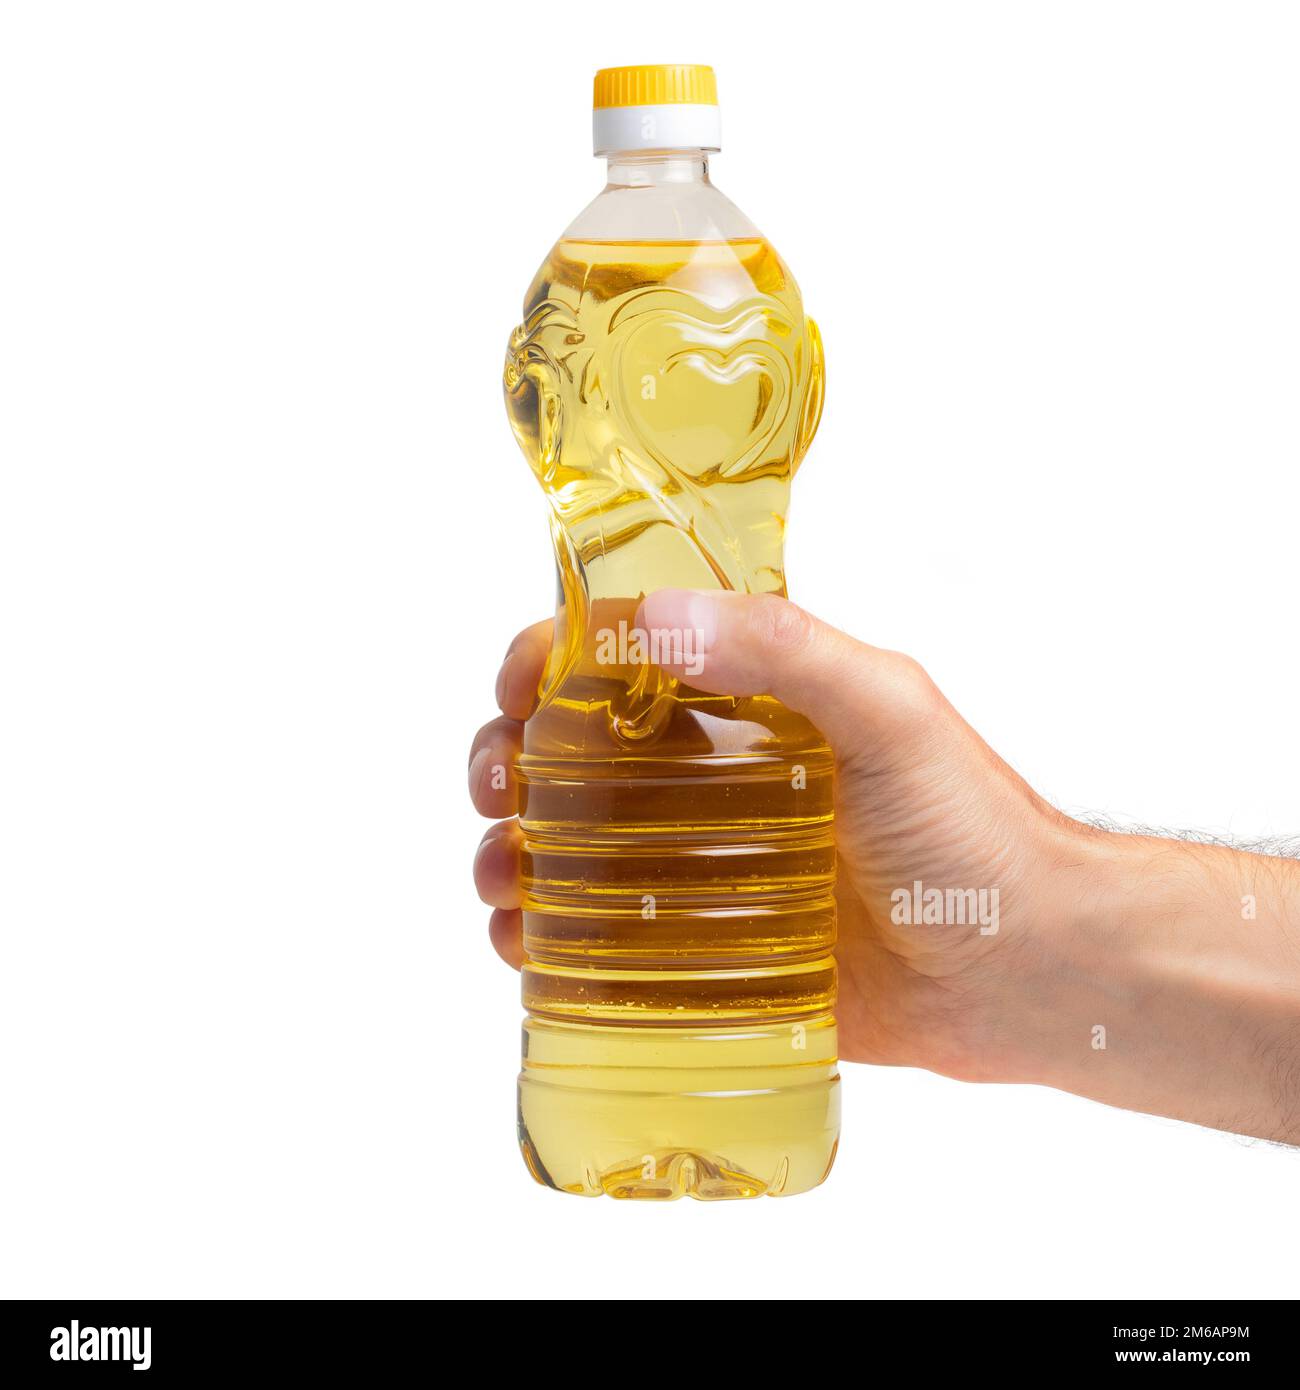 Eine Flasche goldenes Sonnenblumenöl in der Hand. Produkt auf einem weißen isolierten Hintergrund ohne Etikett. Sonnenblumenöl stammt aus den Samen der Sonnenblumen. Stockfoto